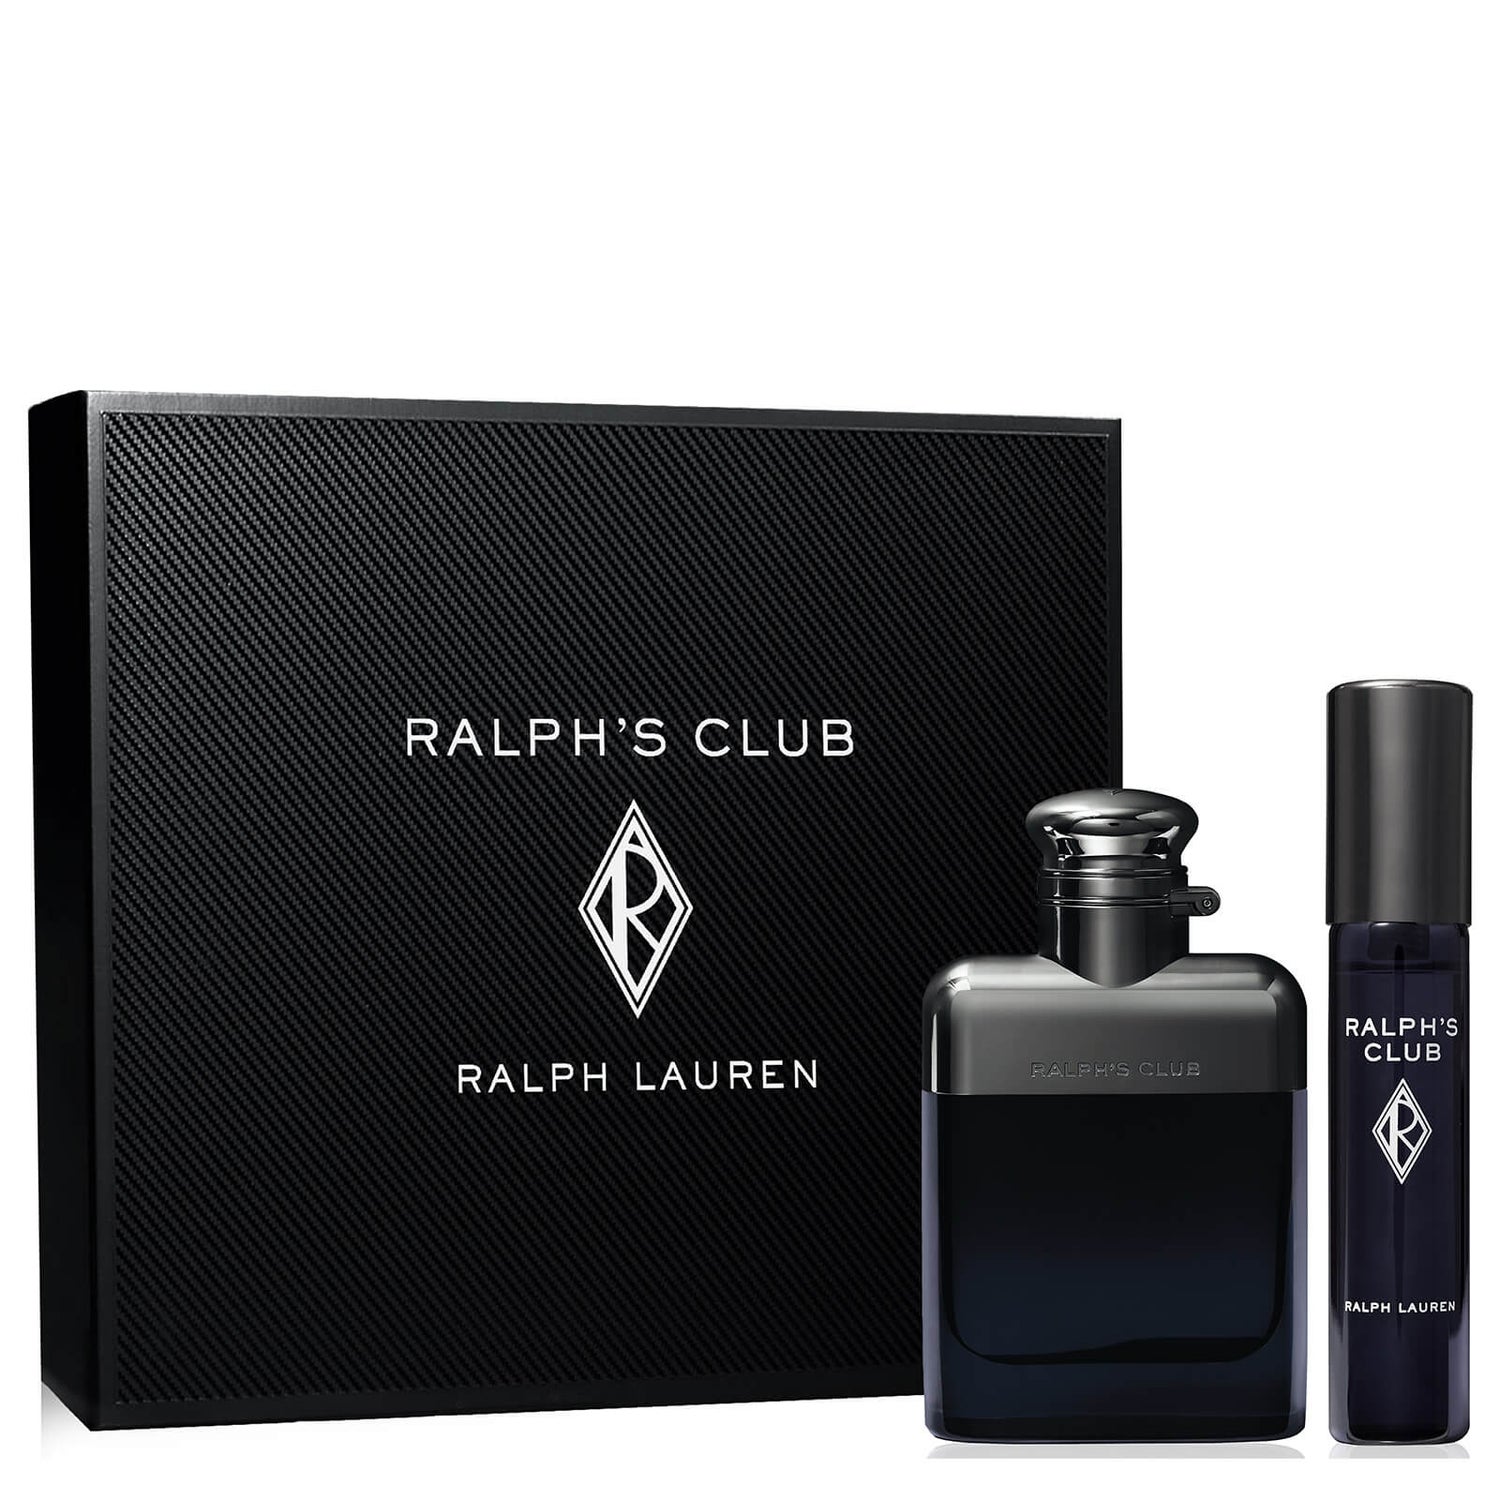 Ralph Lauren Ralph's Club Eau de Toilette Gift Set 50ml (im Wert von 75,60 €)